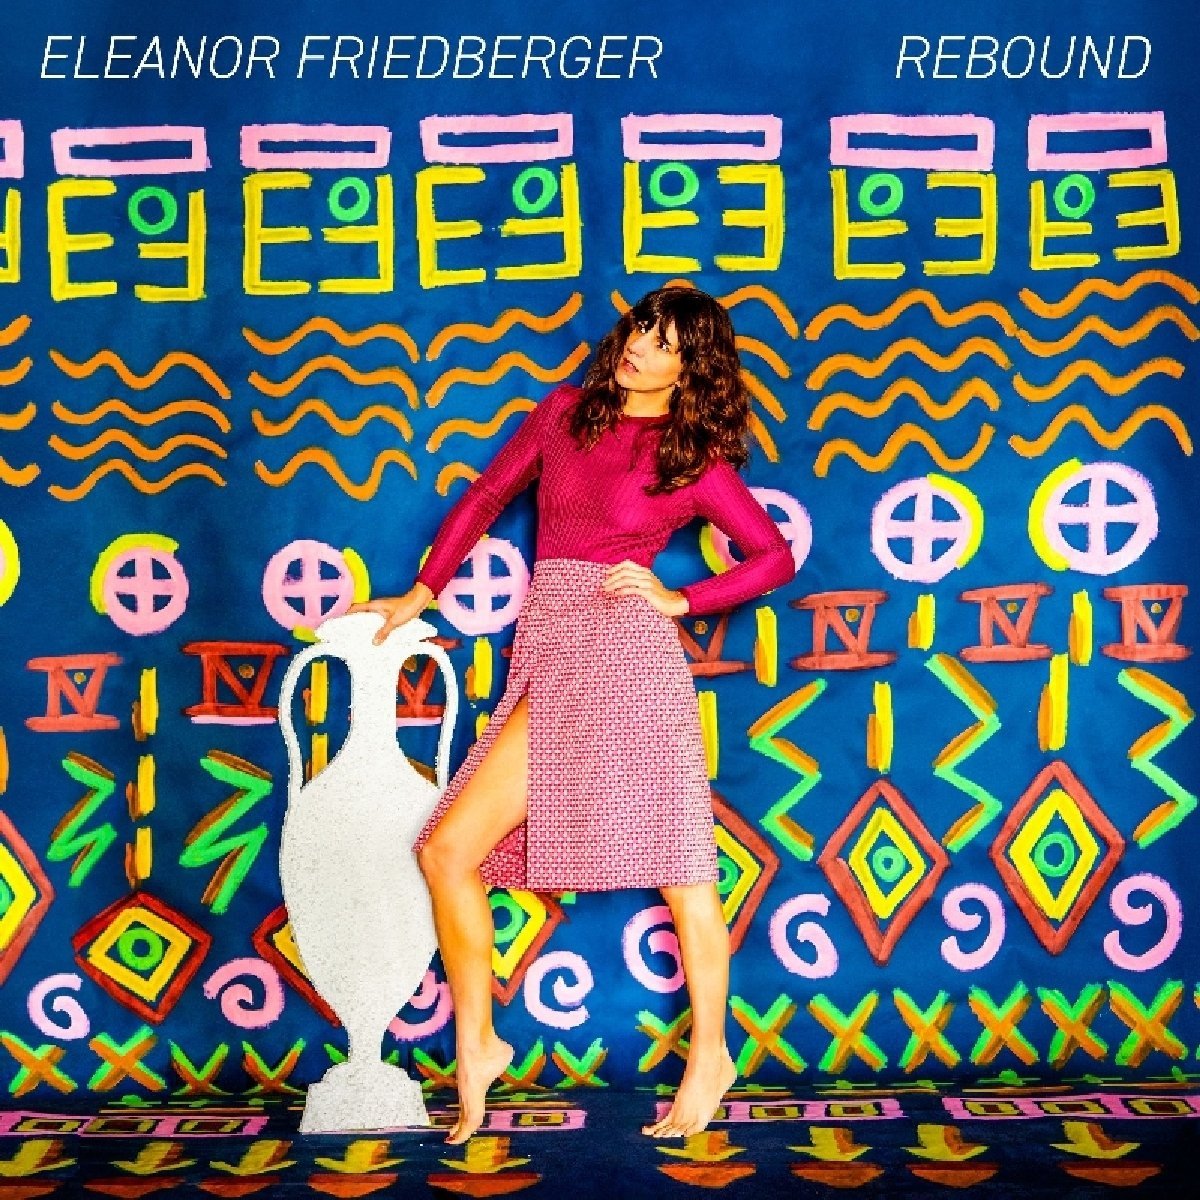 Elanor Friedberger - Rebound CD